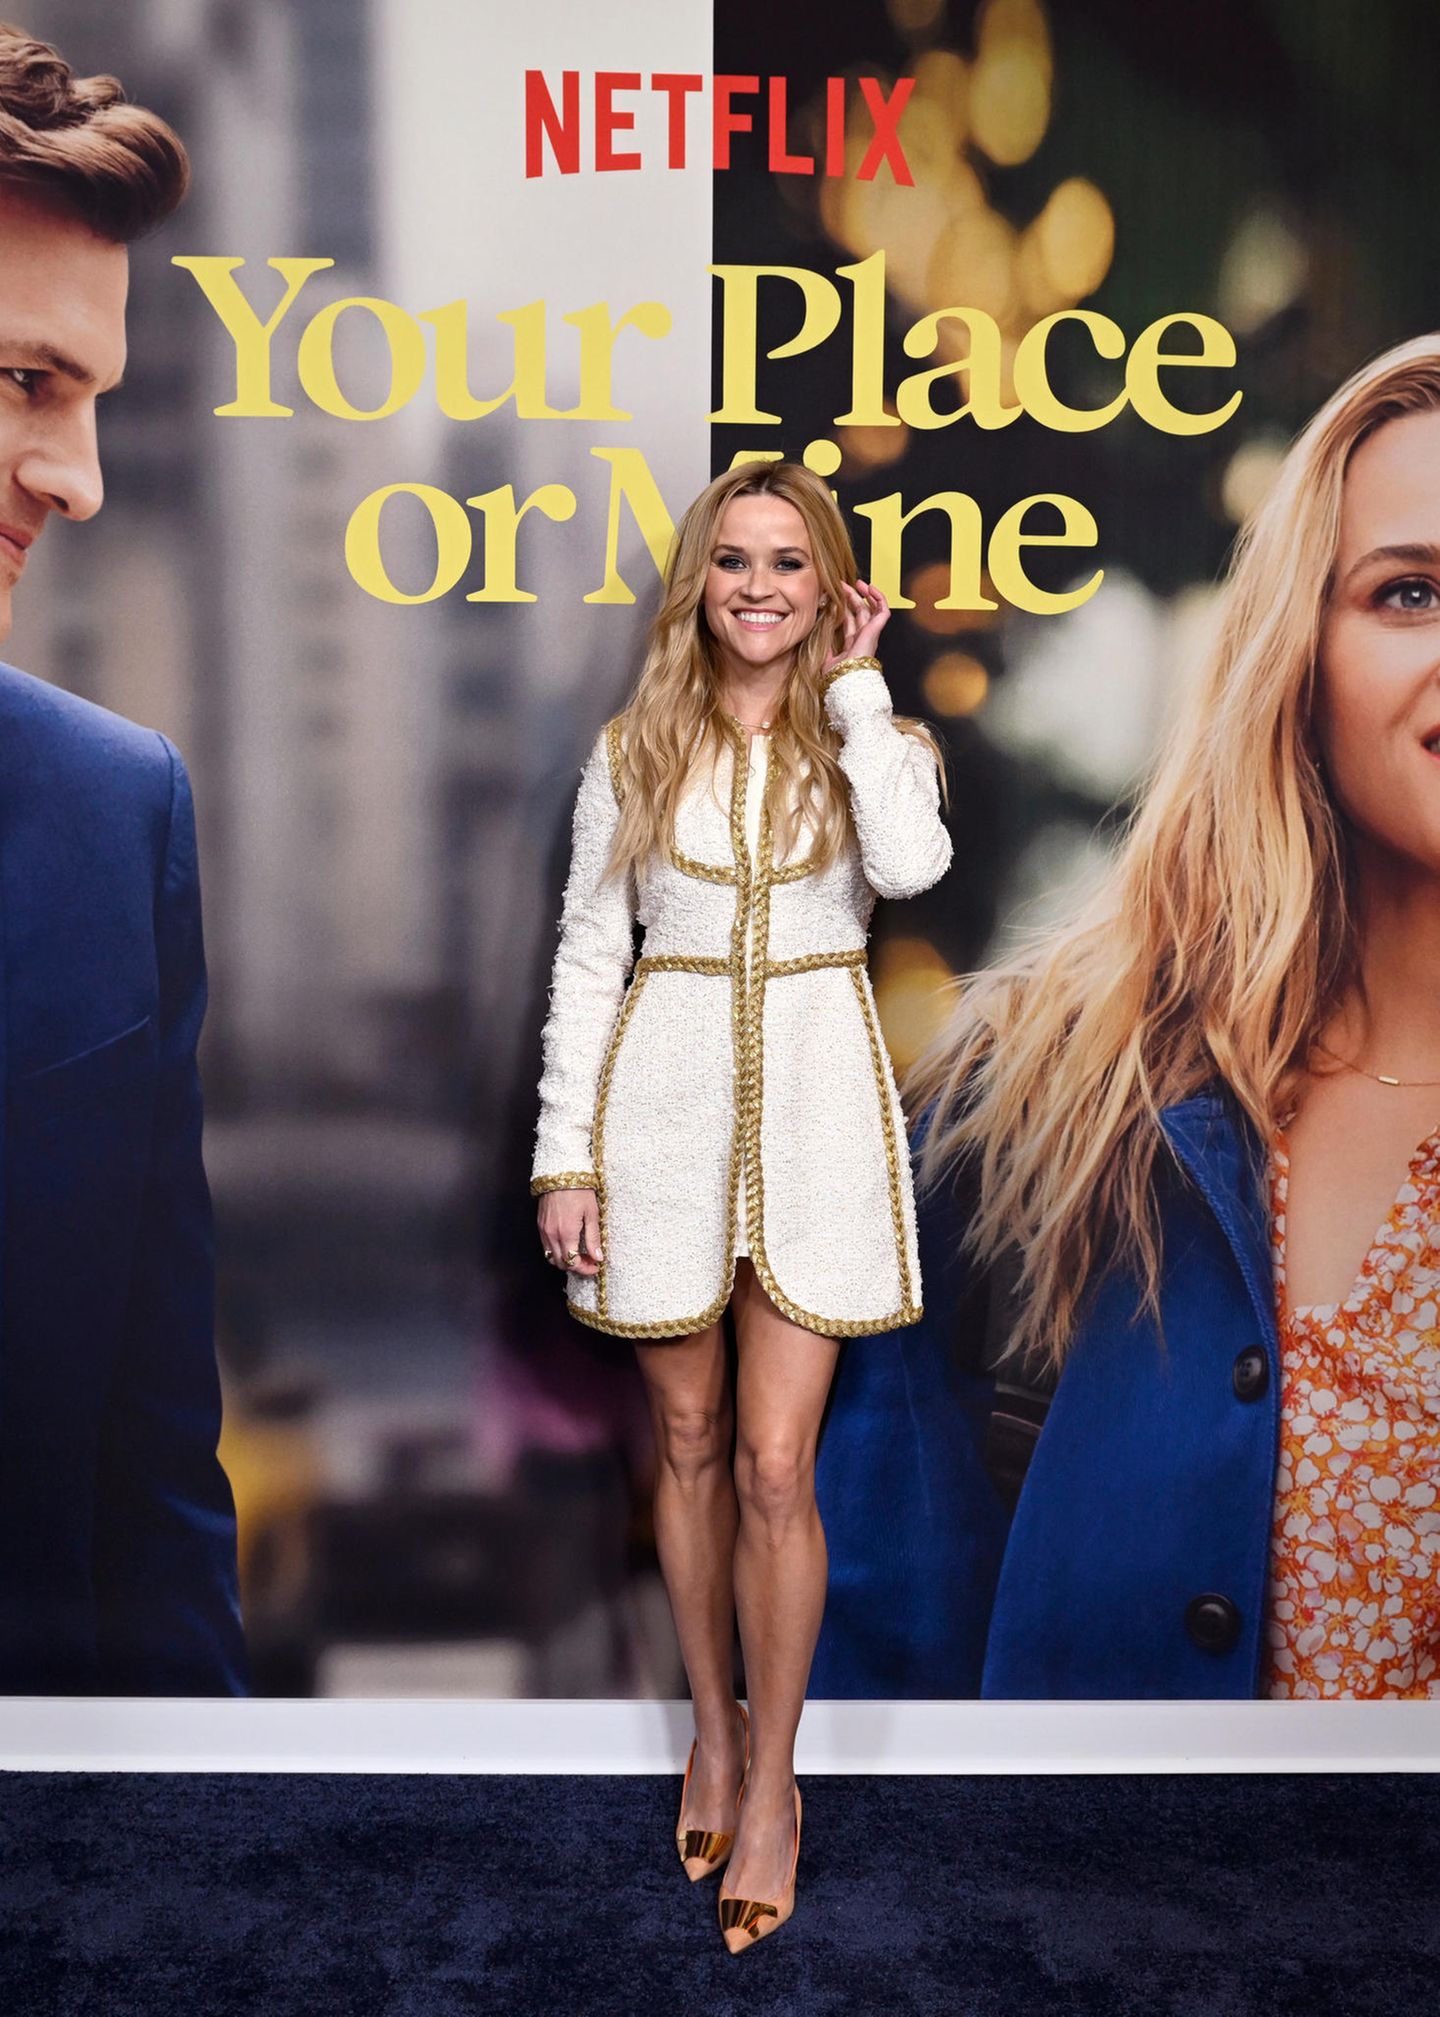 Glücklich über ihren neuen Film "Your Place or Mine" posiert Reese Witherspoon auf dem roten Teppich des offiziellen Screenings in New York. Ihre offenen Haare schiebt sie sich verspielt hinter die Ohren. Auch ihr Look ist romantisch und schick. Ihr weißes Tweed-Kleid ist mit goldenen Nähten verzieht und elegant geschnitten. Dazu kombiniert die 46-jährige spitze Pumps und setzt damit ihre Beine 1 A in Szene.